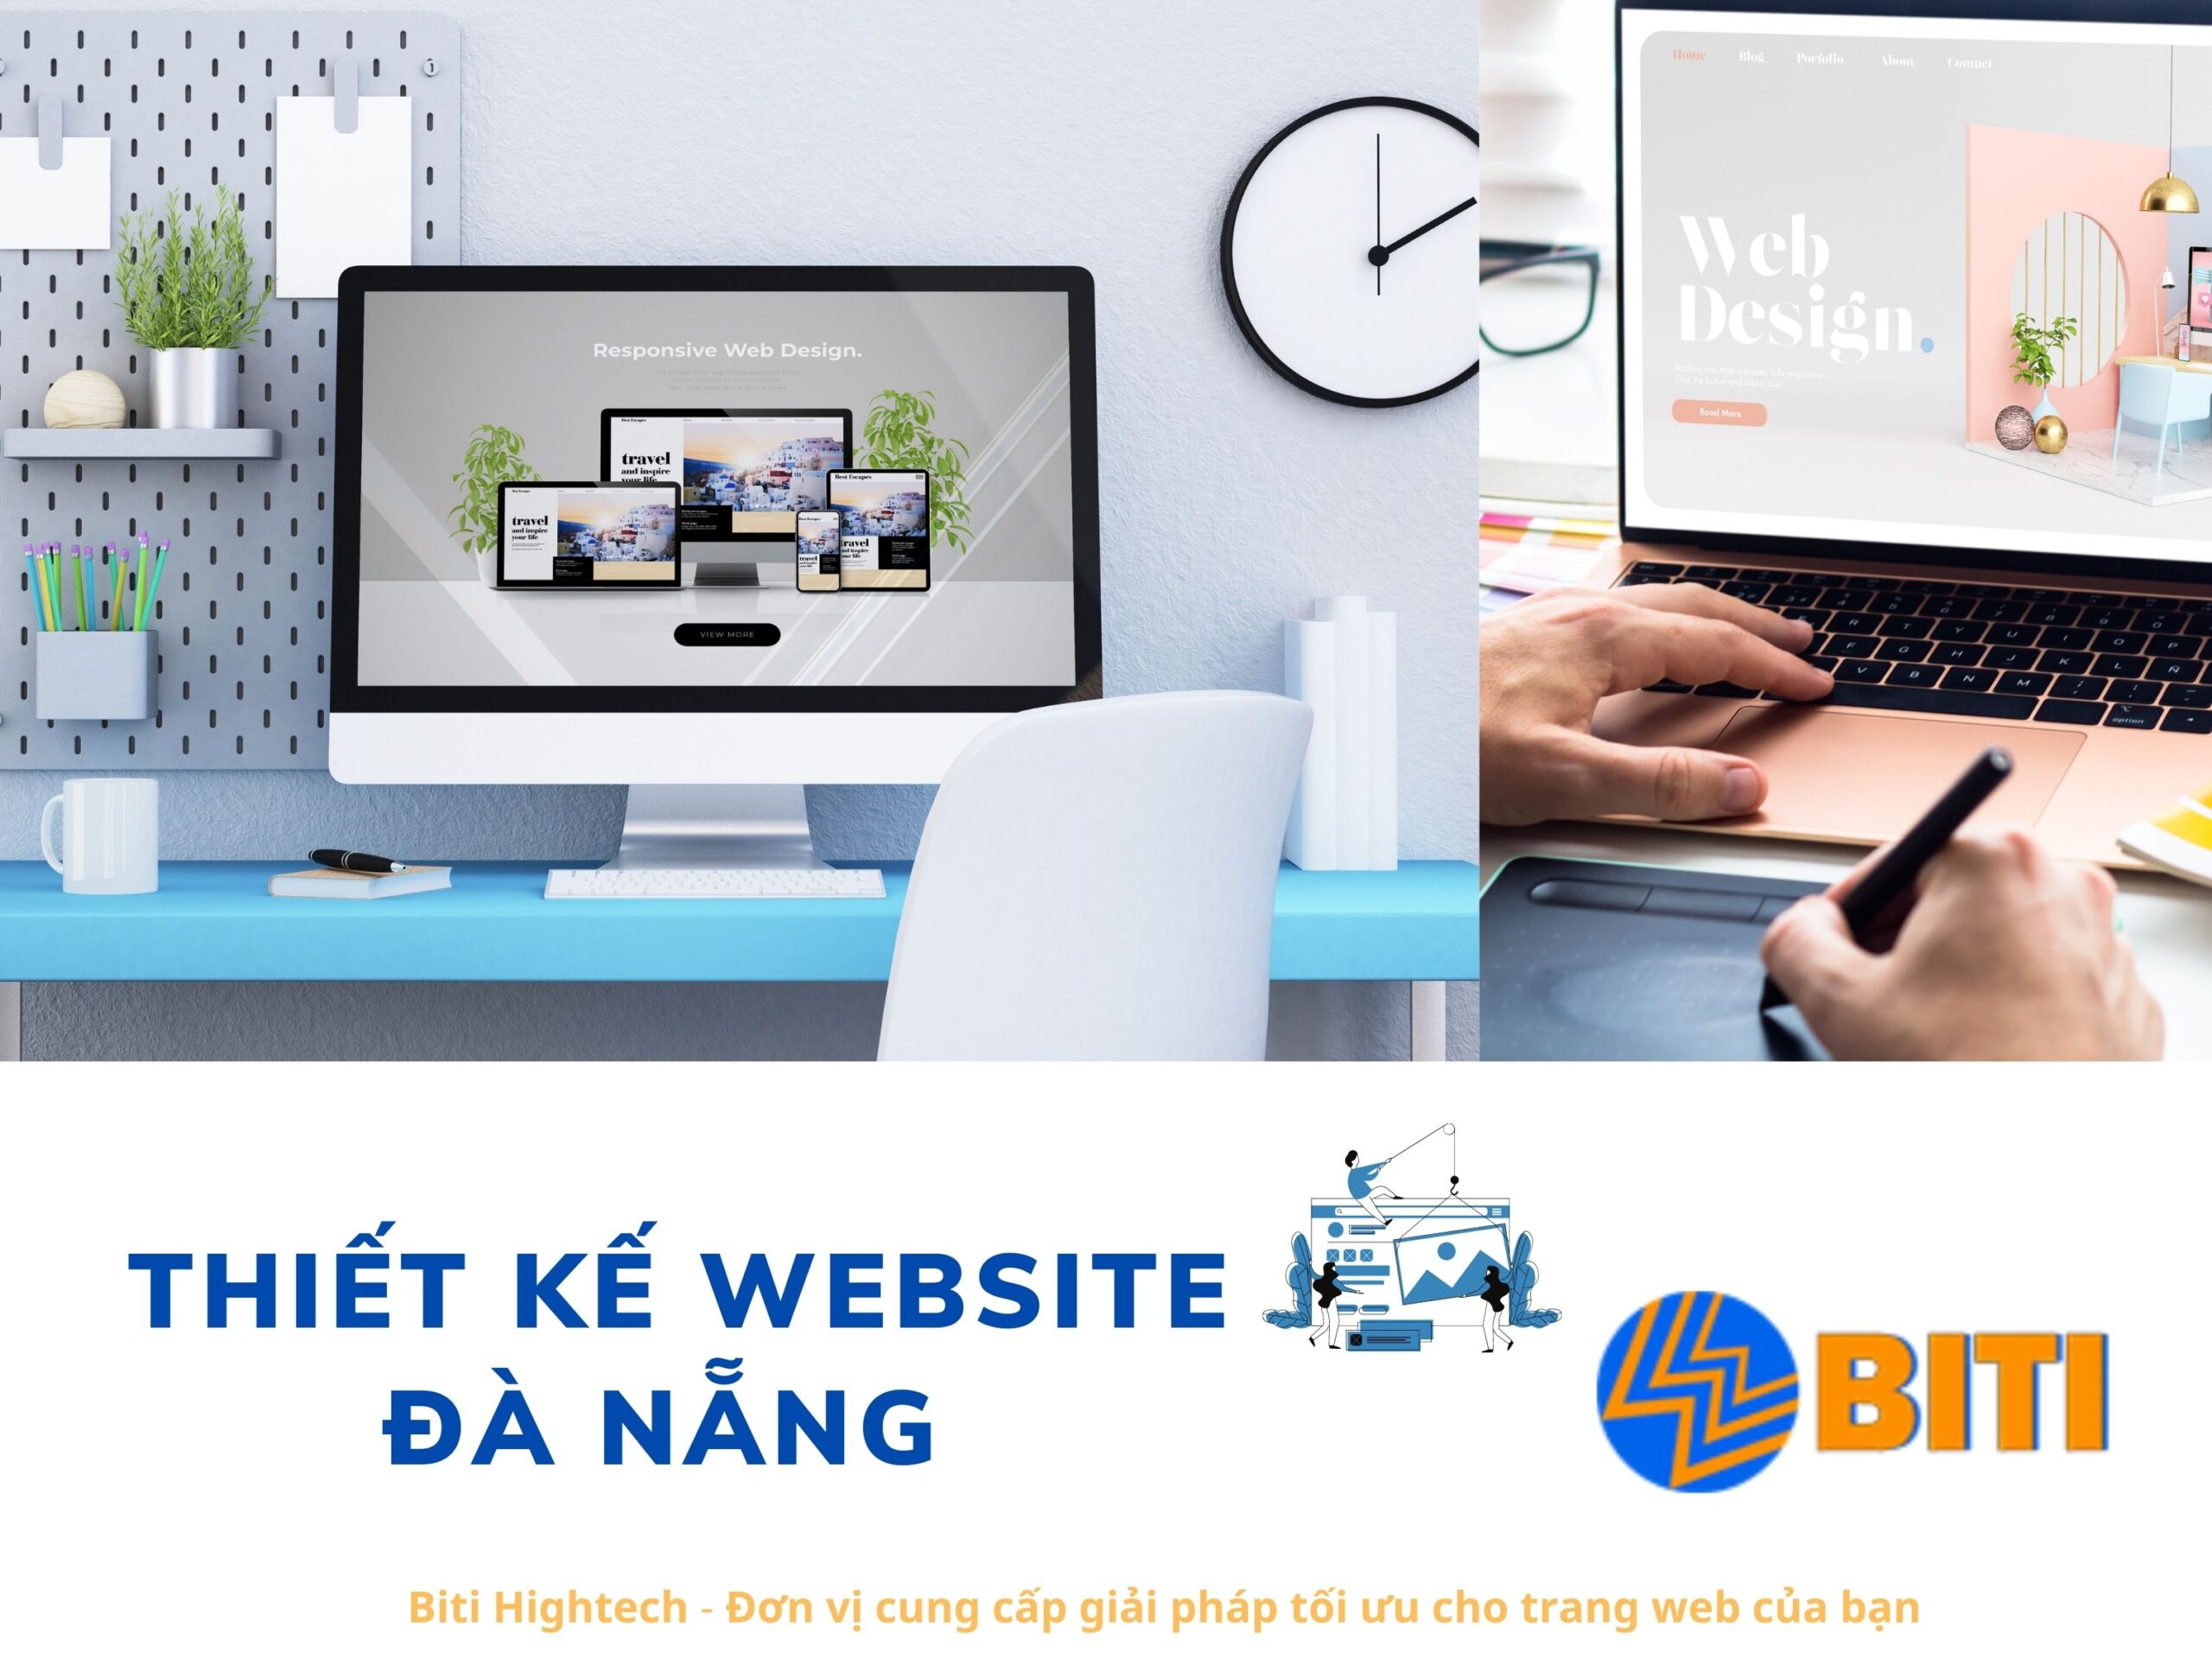 Thiết kế website Đà Nẵng chuyên nghiệp, chuẩn seo